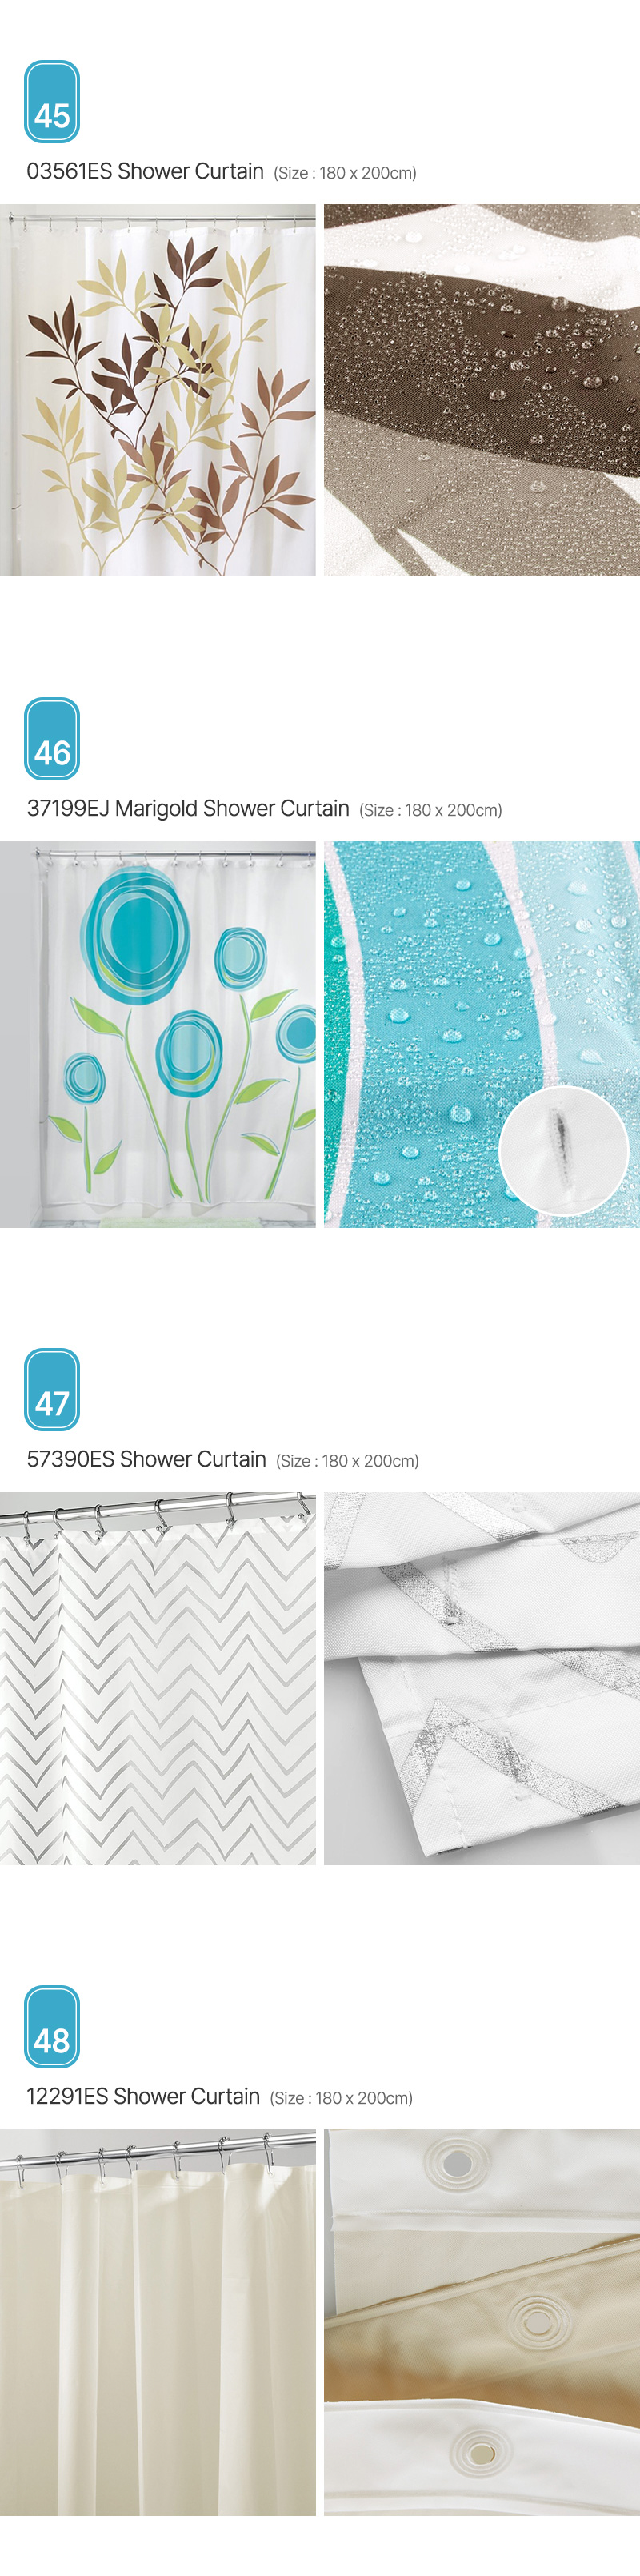 Aria_Shower-Curtain_12.jpg